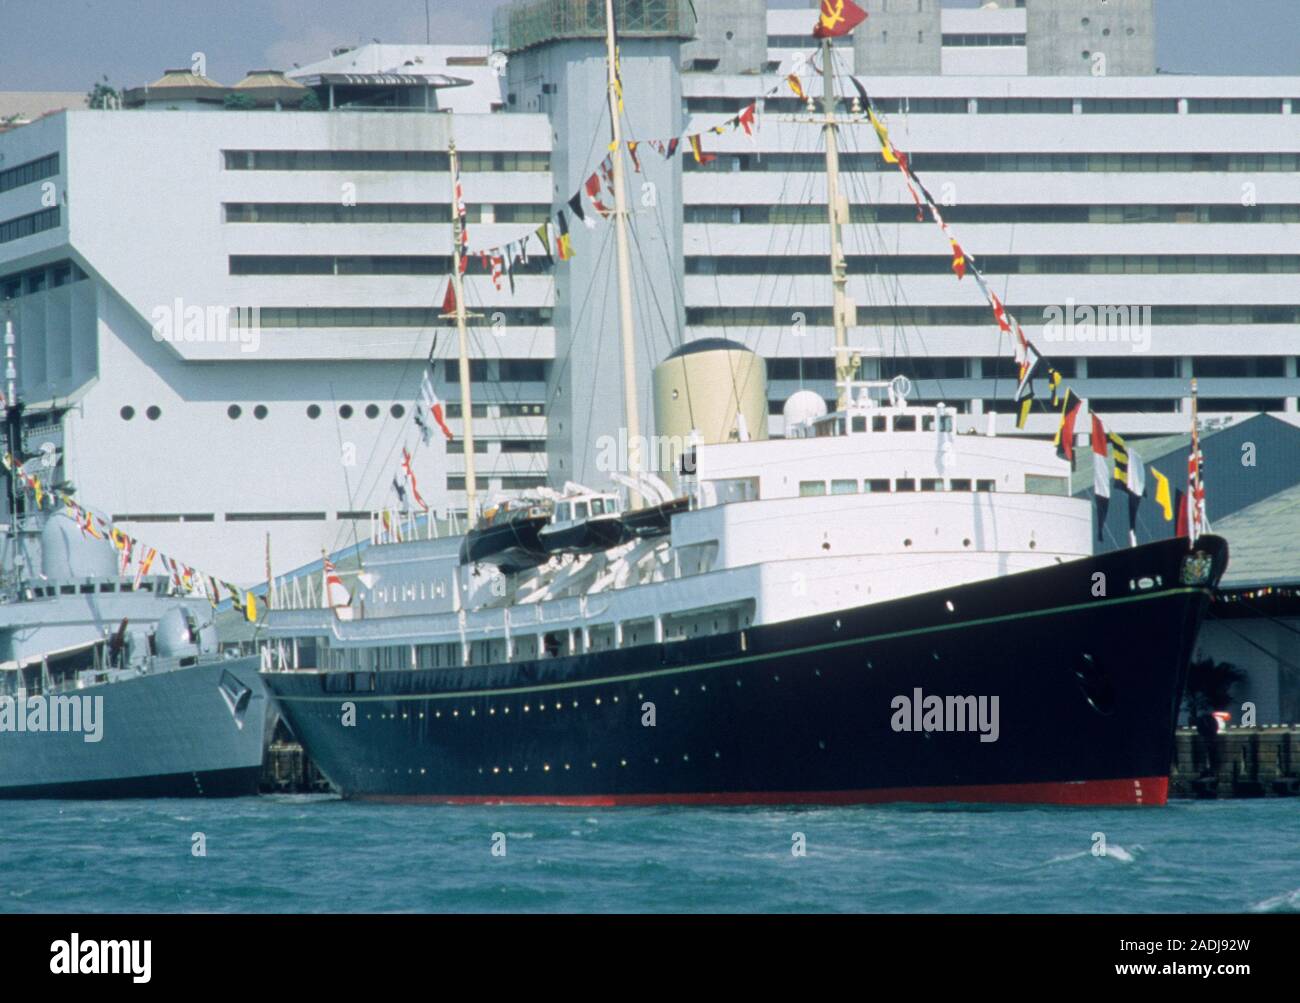 HMY Britannia angedockt in Singapur Hafen der Stadt während einer königlichen Besuch von Königin Elizabeth II. nach Singapur im Jahr 1989. Stockfoto